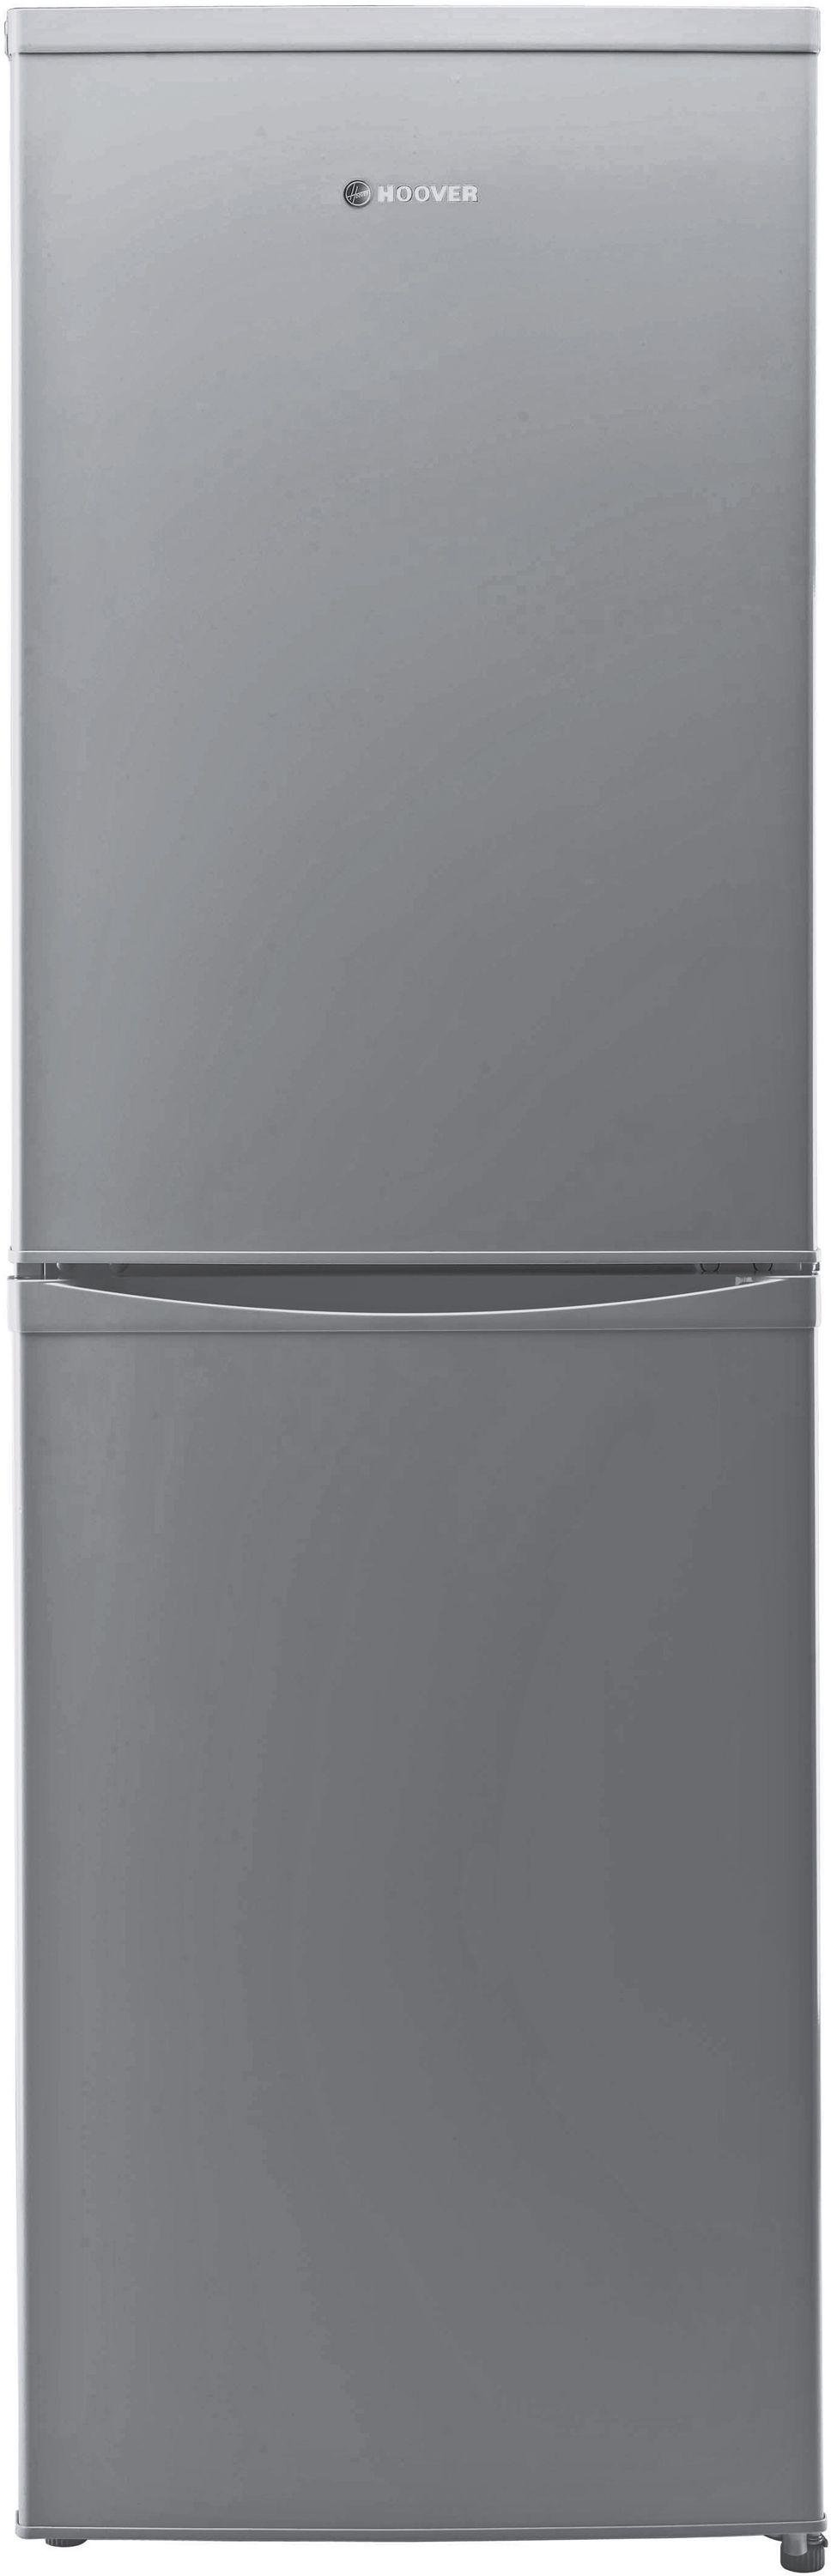 Hoover HVBS5162AK Tall Fridge Freezer - Silver.